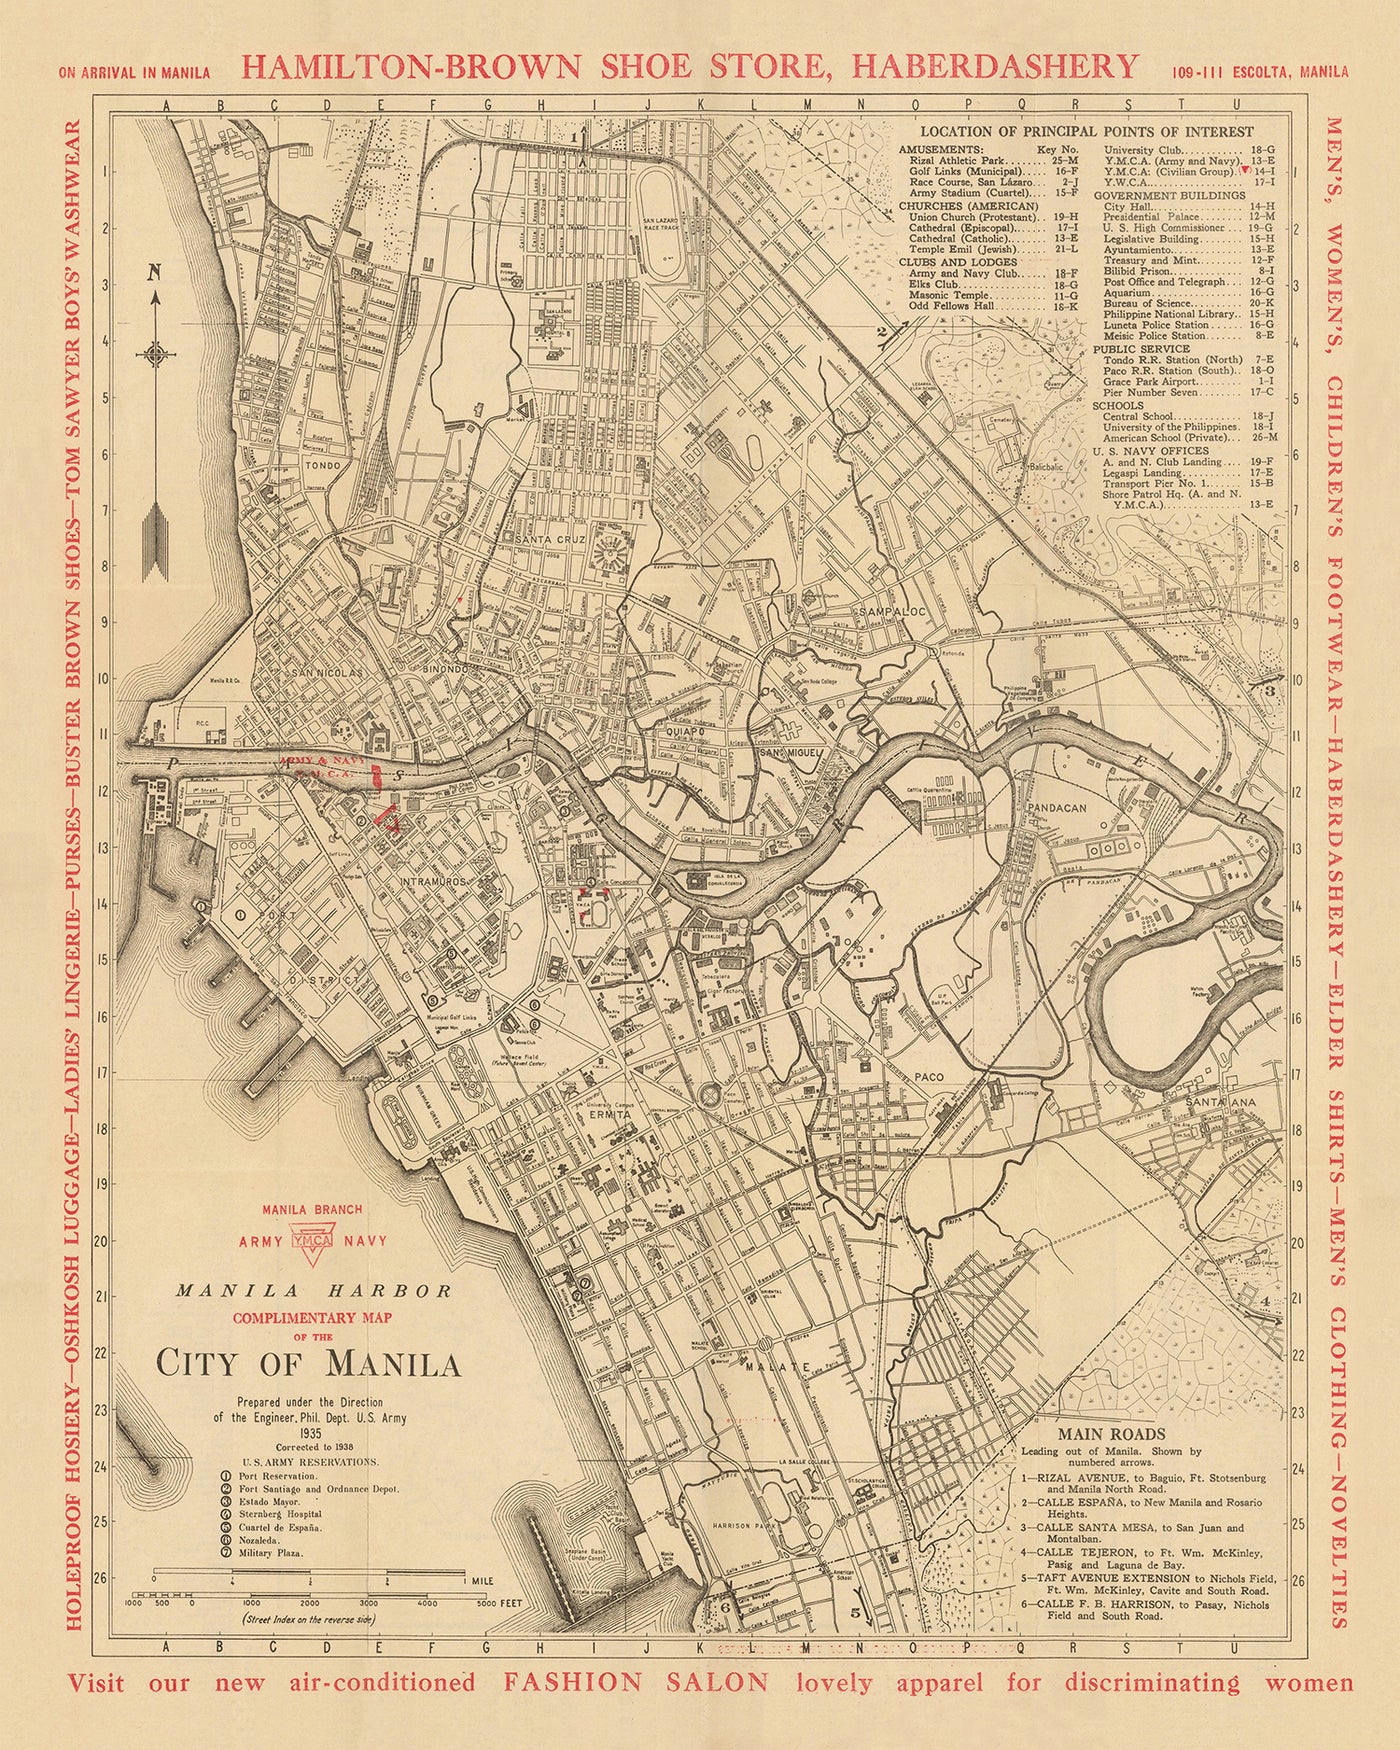 Old Map of Manila by YMCA & US Army, 1938: Intramuros, Ermita, Quiapo, San Miguel, Binondo, Pandacan